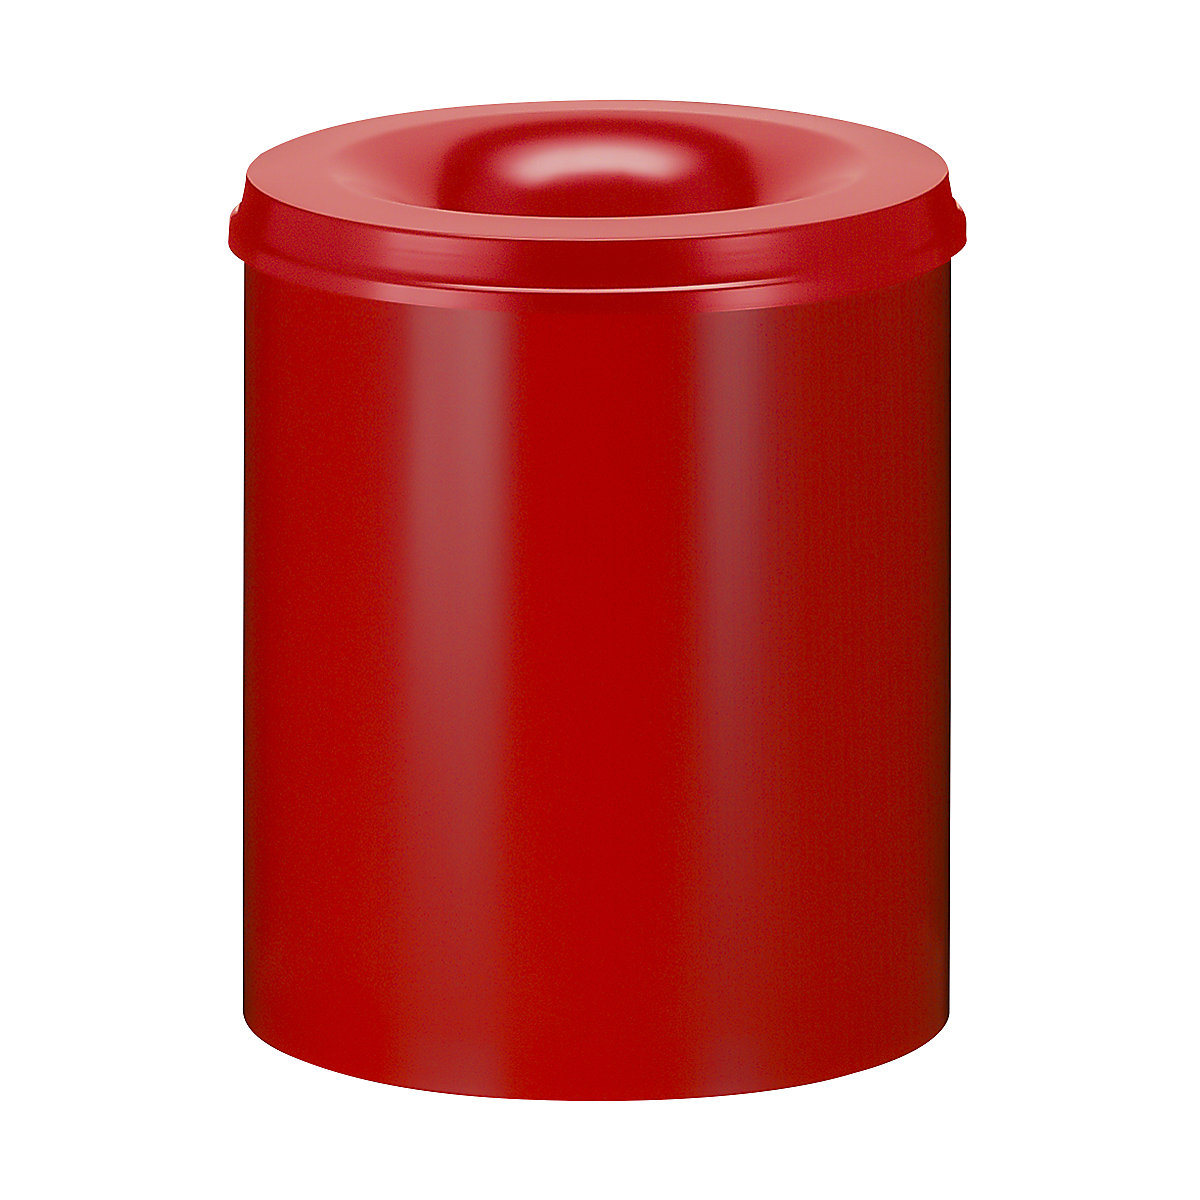 Bezpieczny kosz na papier, stal, samogaszący, poj. 80 l, wys. x Ø 540 x 465 mm, korpus czerwony / głowica gasząca czerwona-7